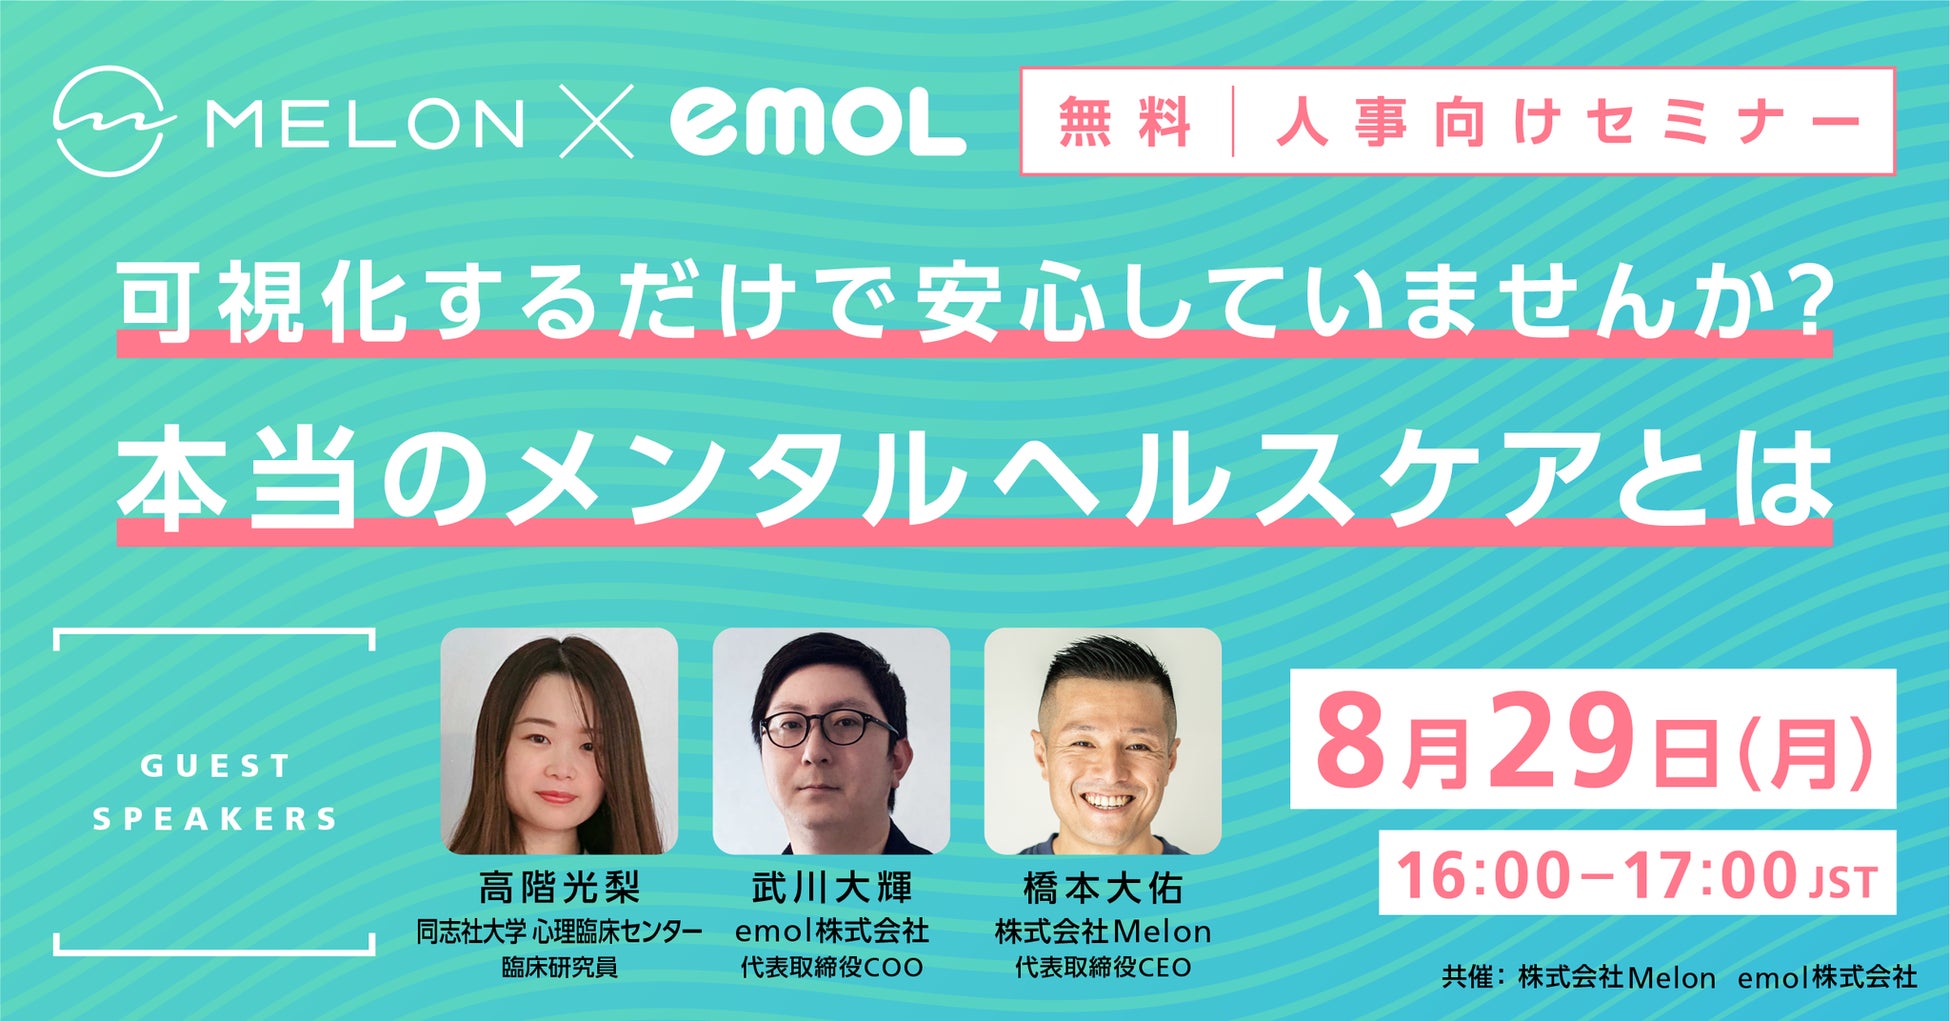 メンタルヘルスケアアプリのemol、『日本国内で行われているメンタルヘルス対策の基本と、従業員が自身で実施できるメンタルセルフケアの実践方法』をテーマにMelon社と共催セミナーを開催